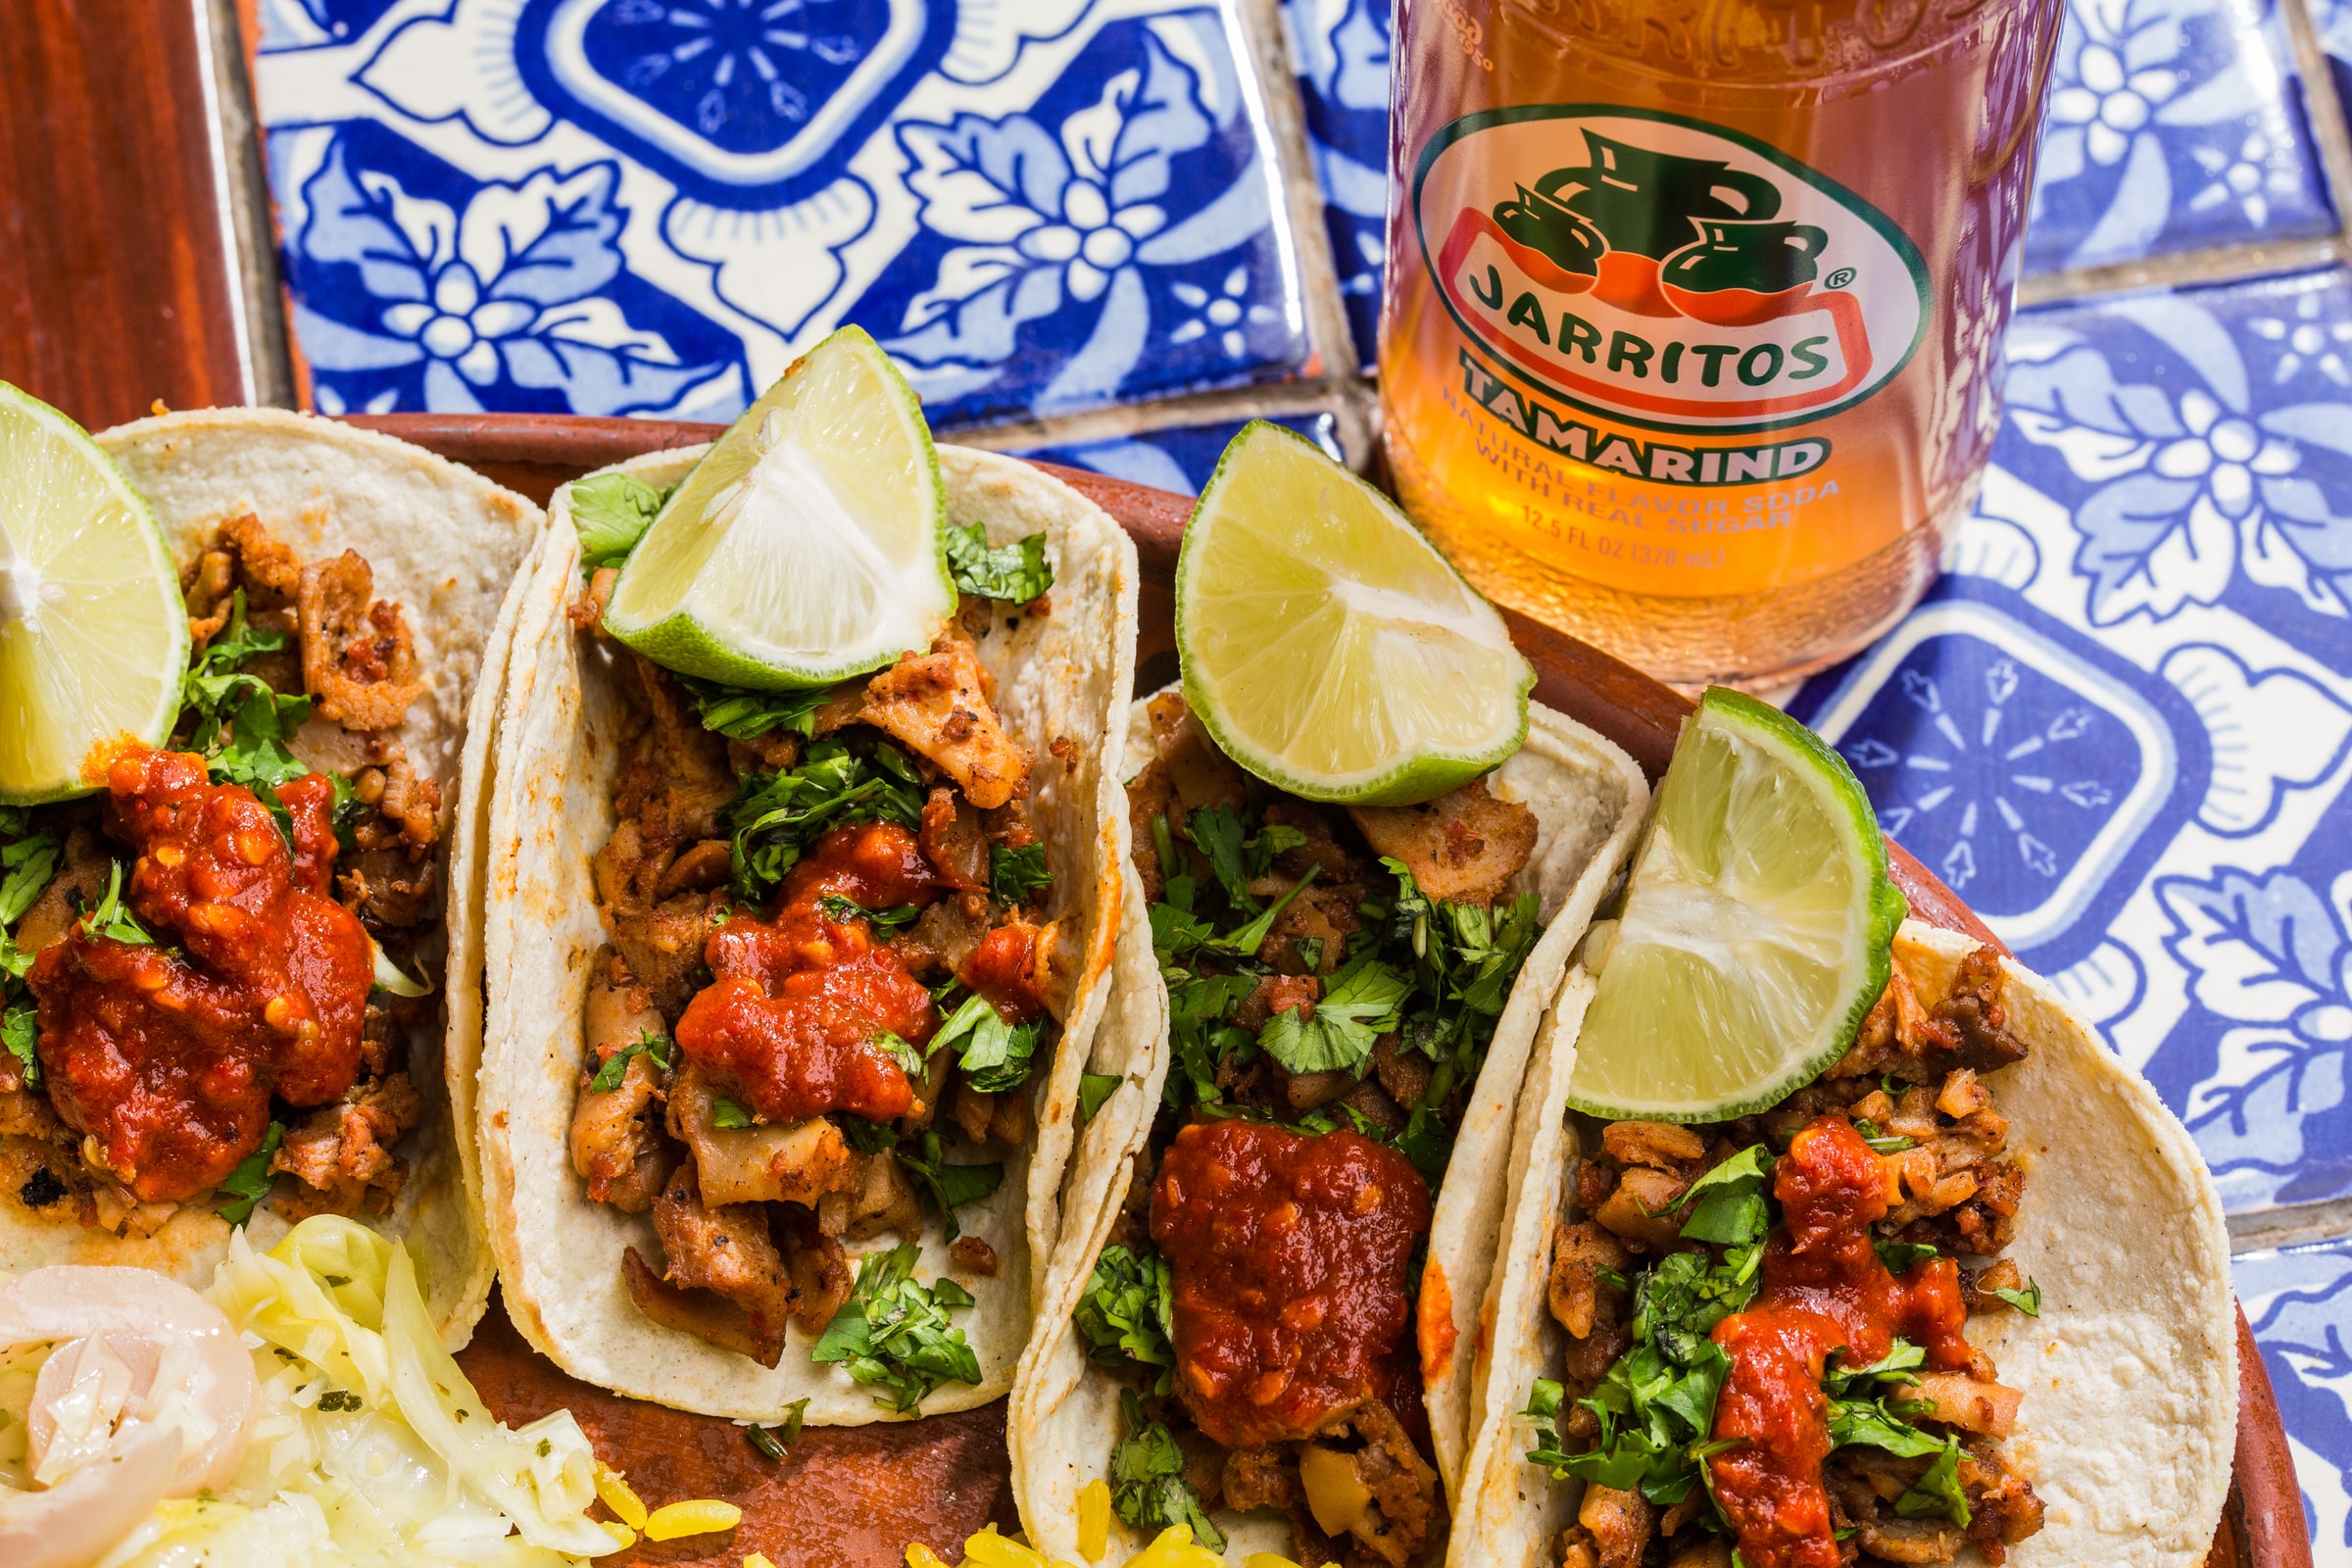 Tacos and Jarritos